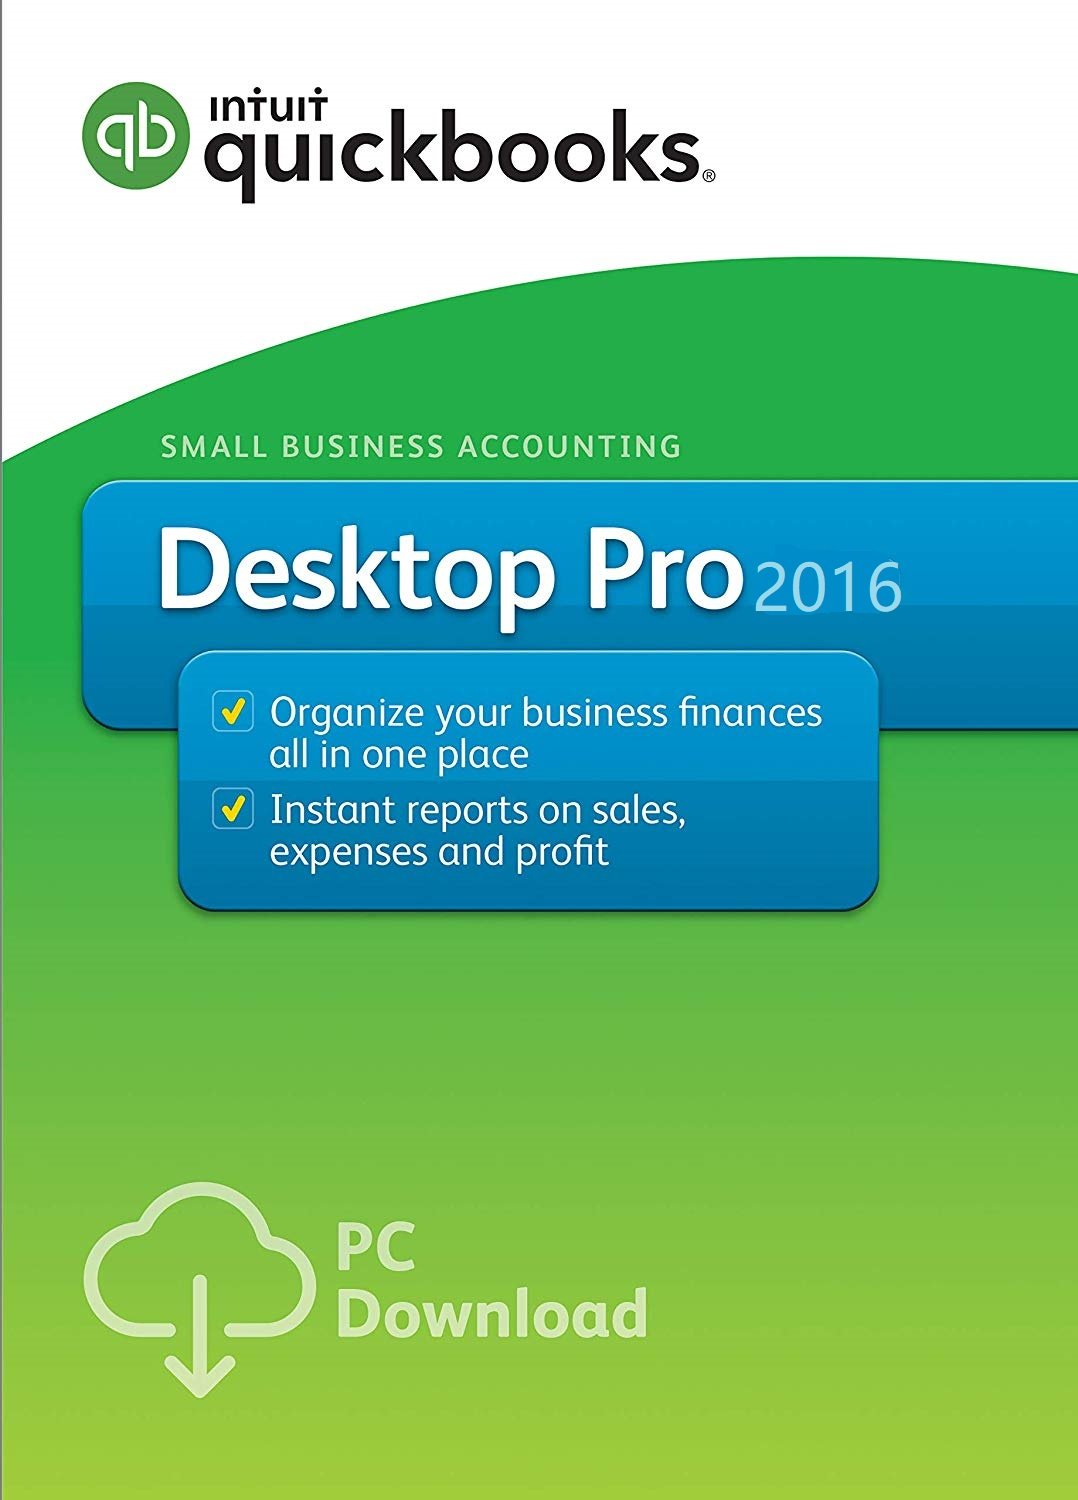 intuit quickbooks desktop pro 2016 headquarters